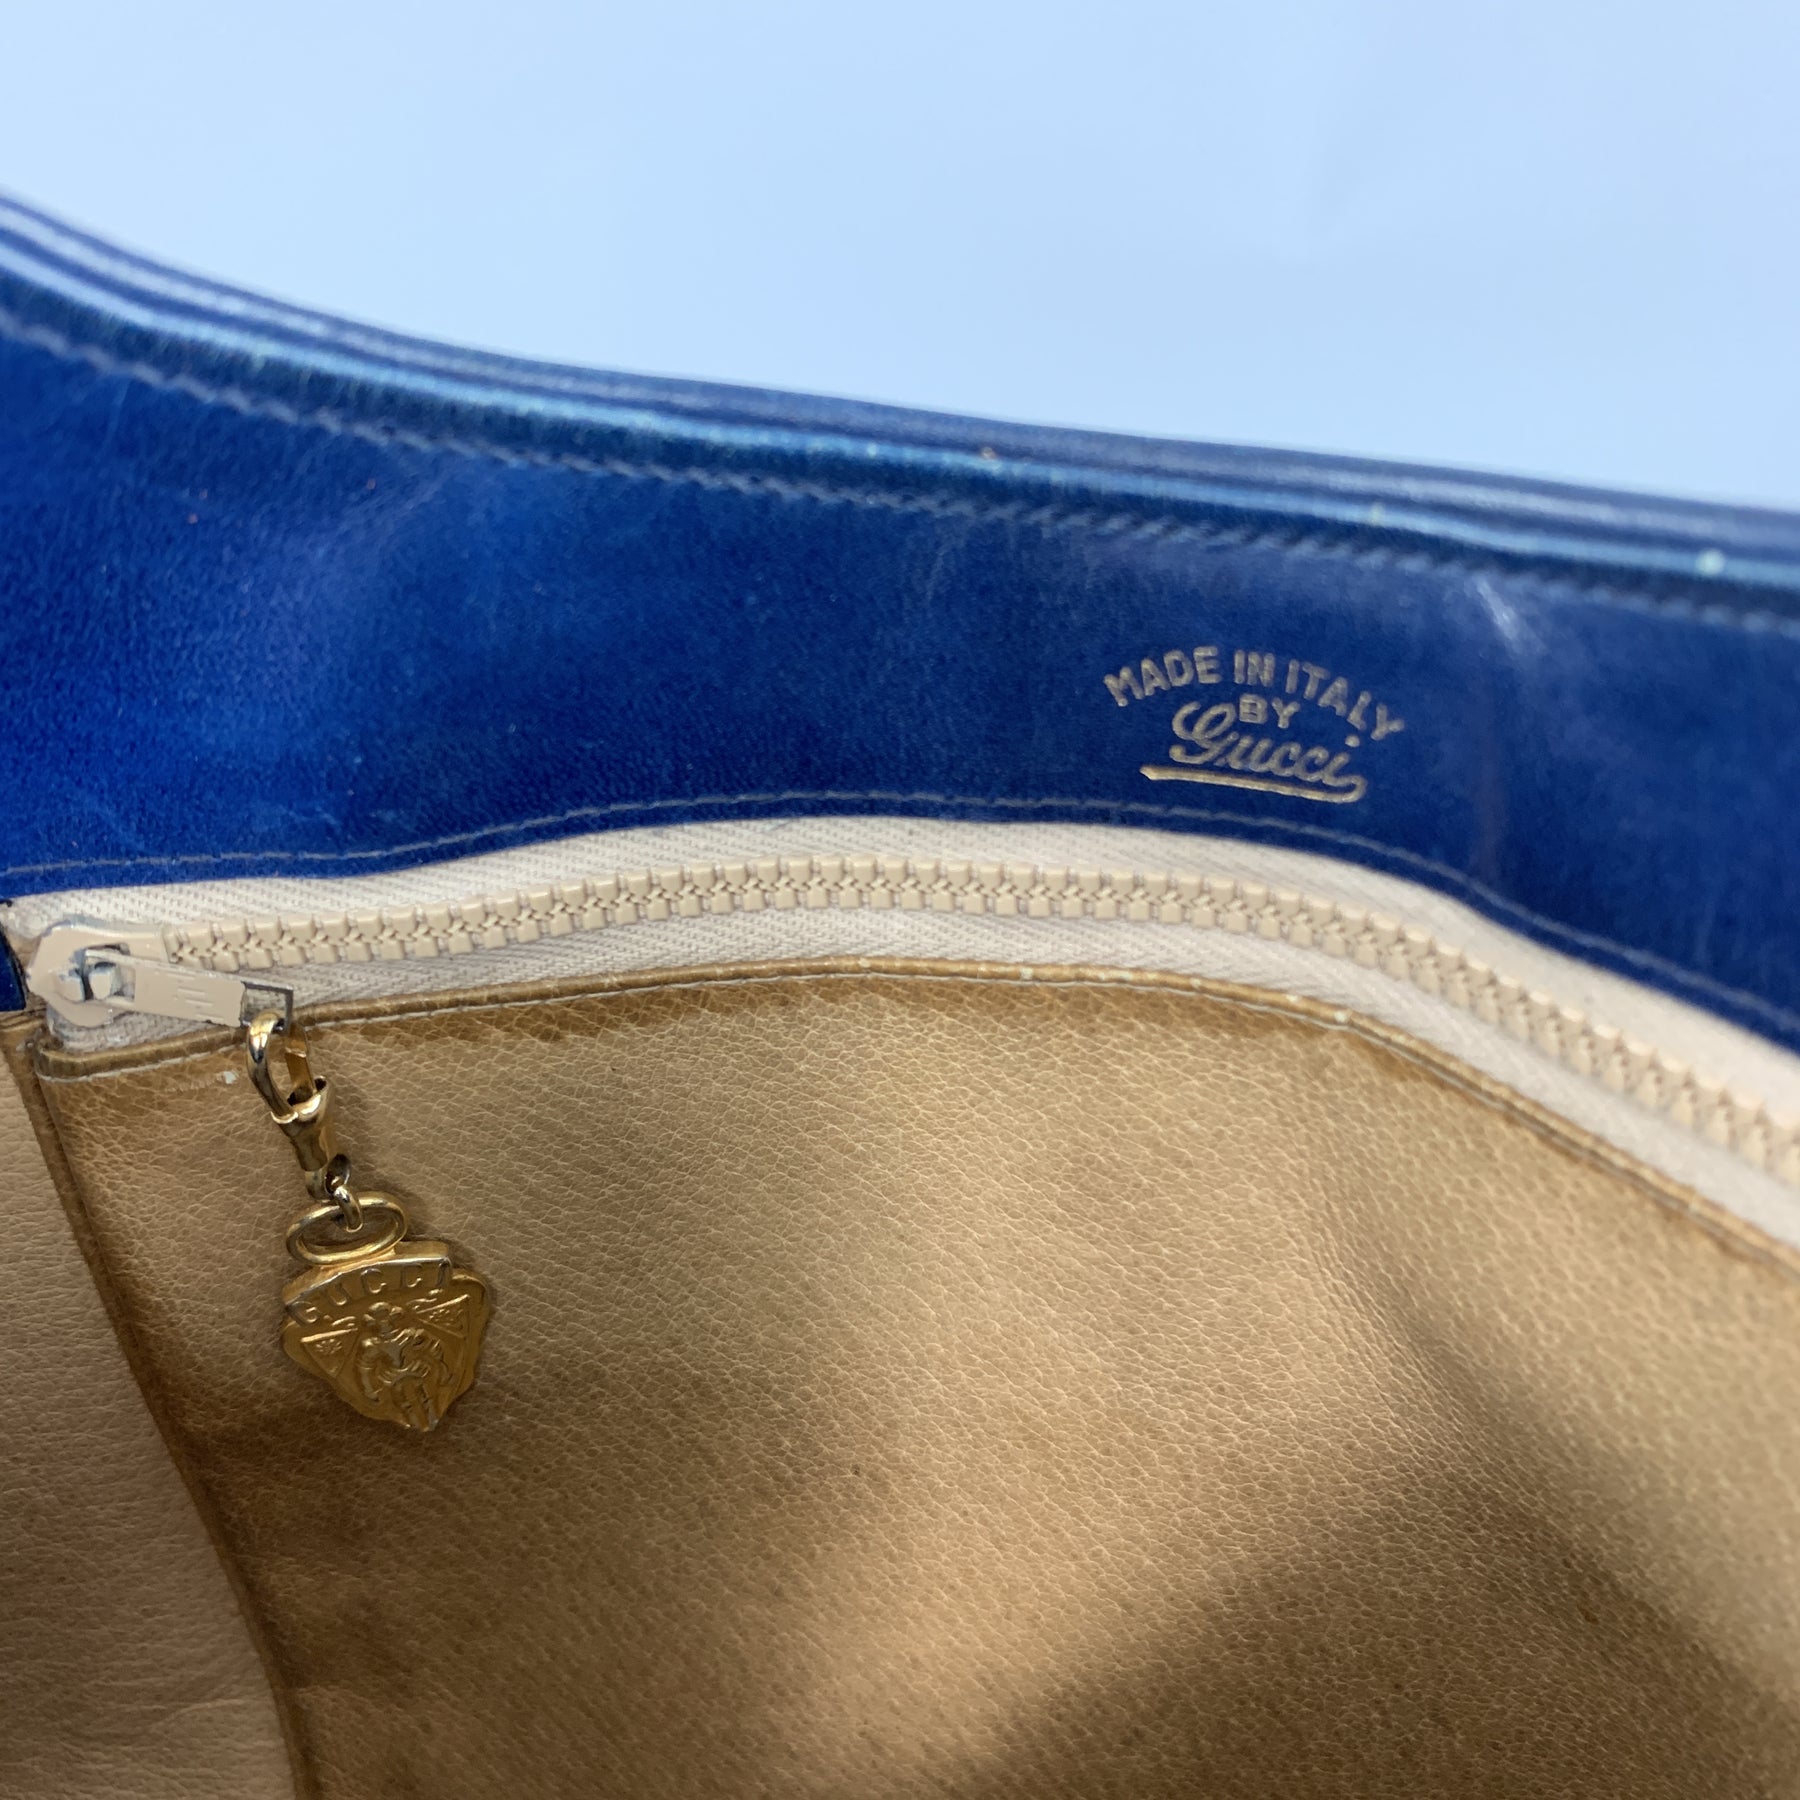 VINTAGE GUCCI FINDS — Vtg. Gucci Navy Blue Leather/Suede Shoulder bag